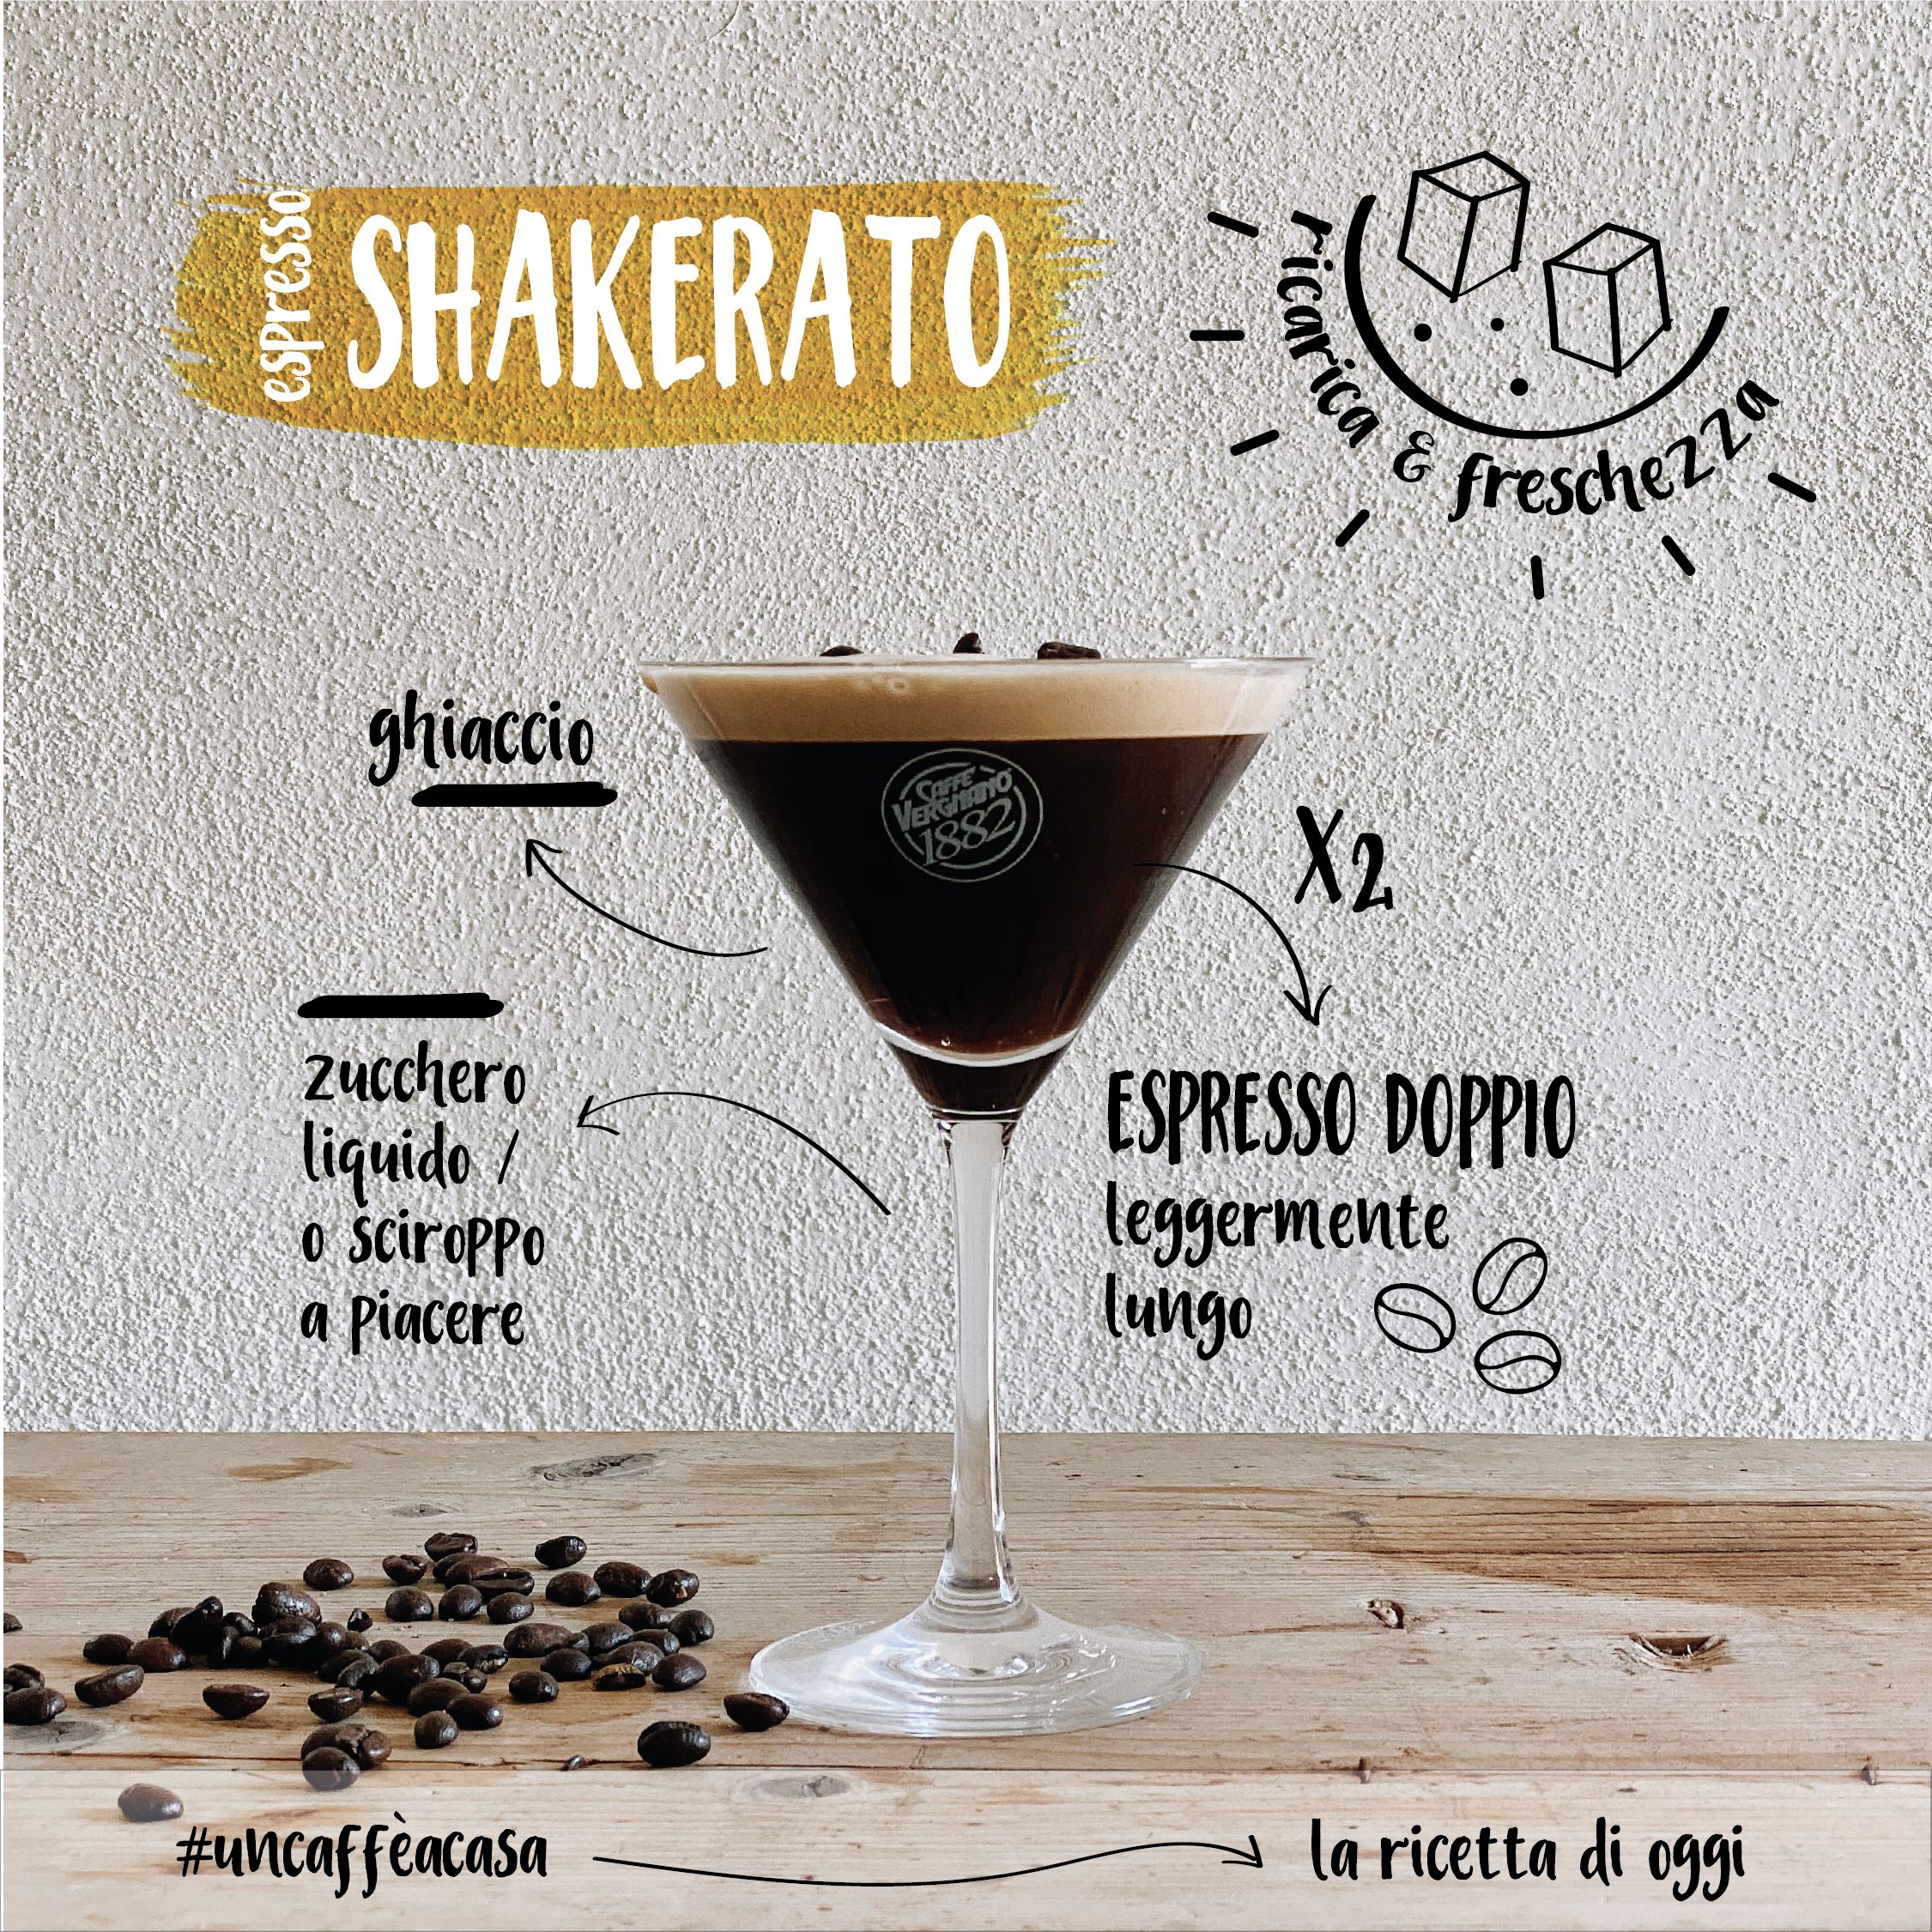 Espresso-shakerato - & news